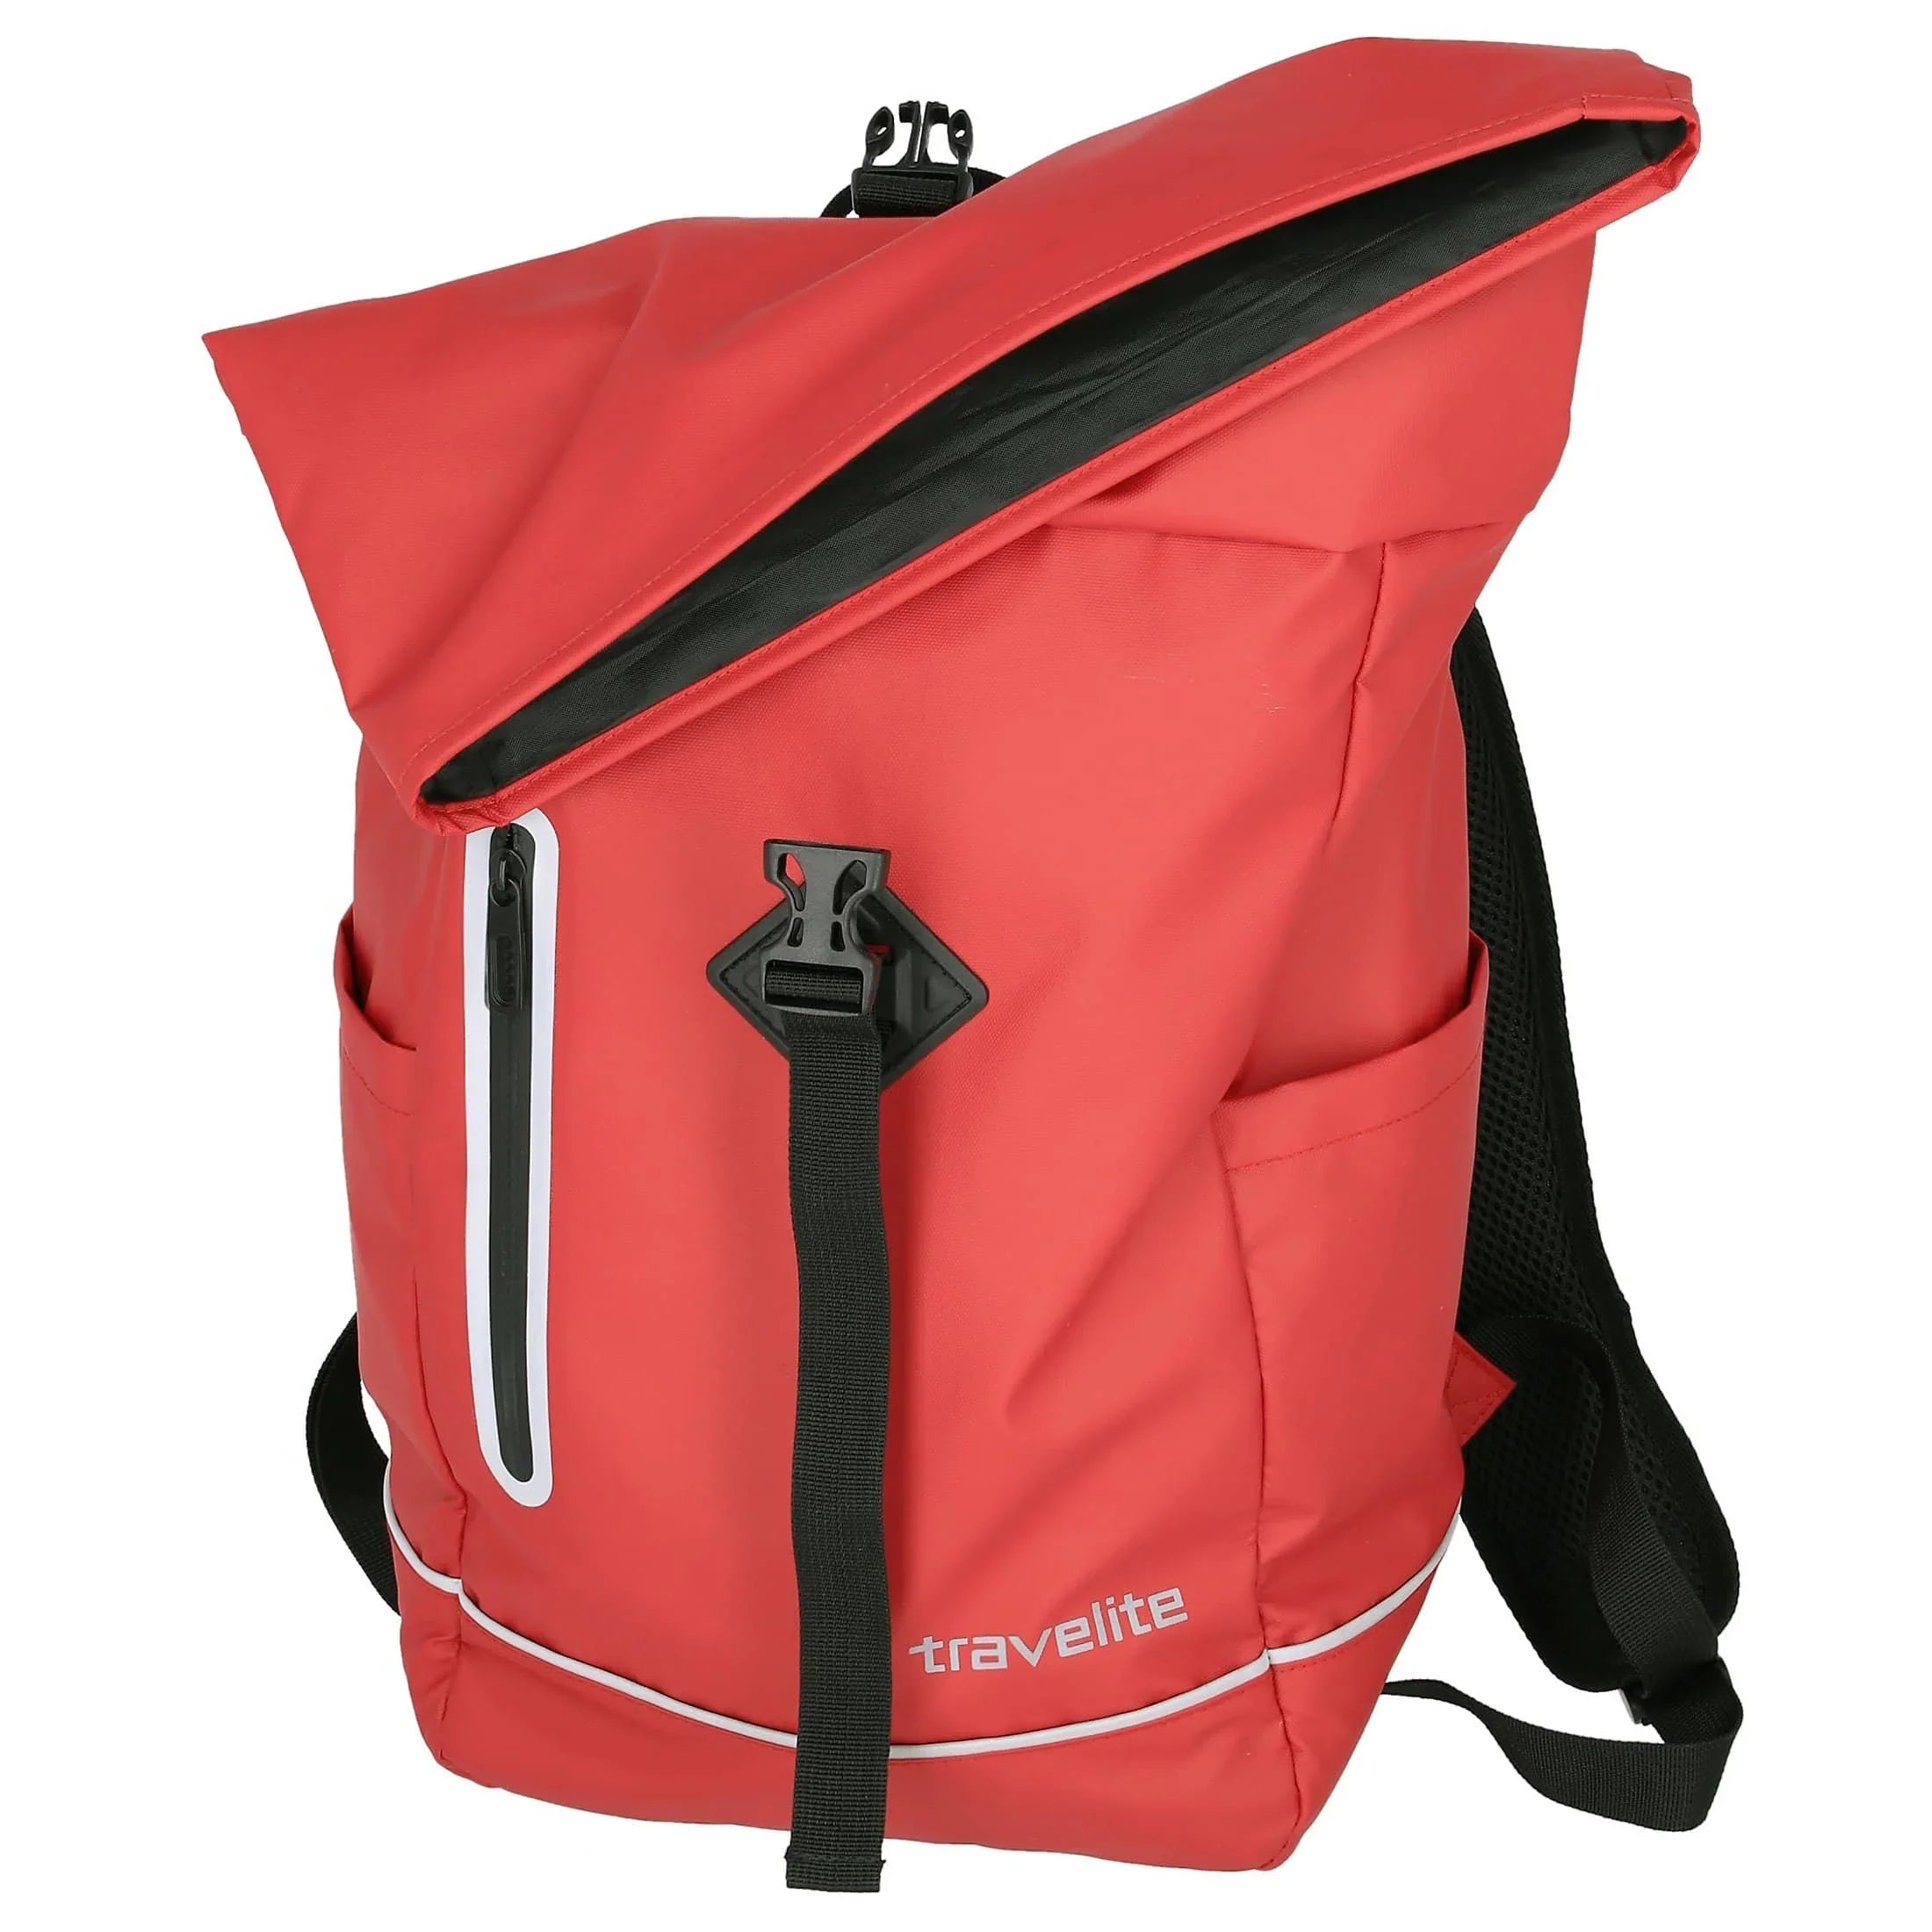 Bâche pour sac à dos enroulable Travelite Basics 48 cm - Vert